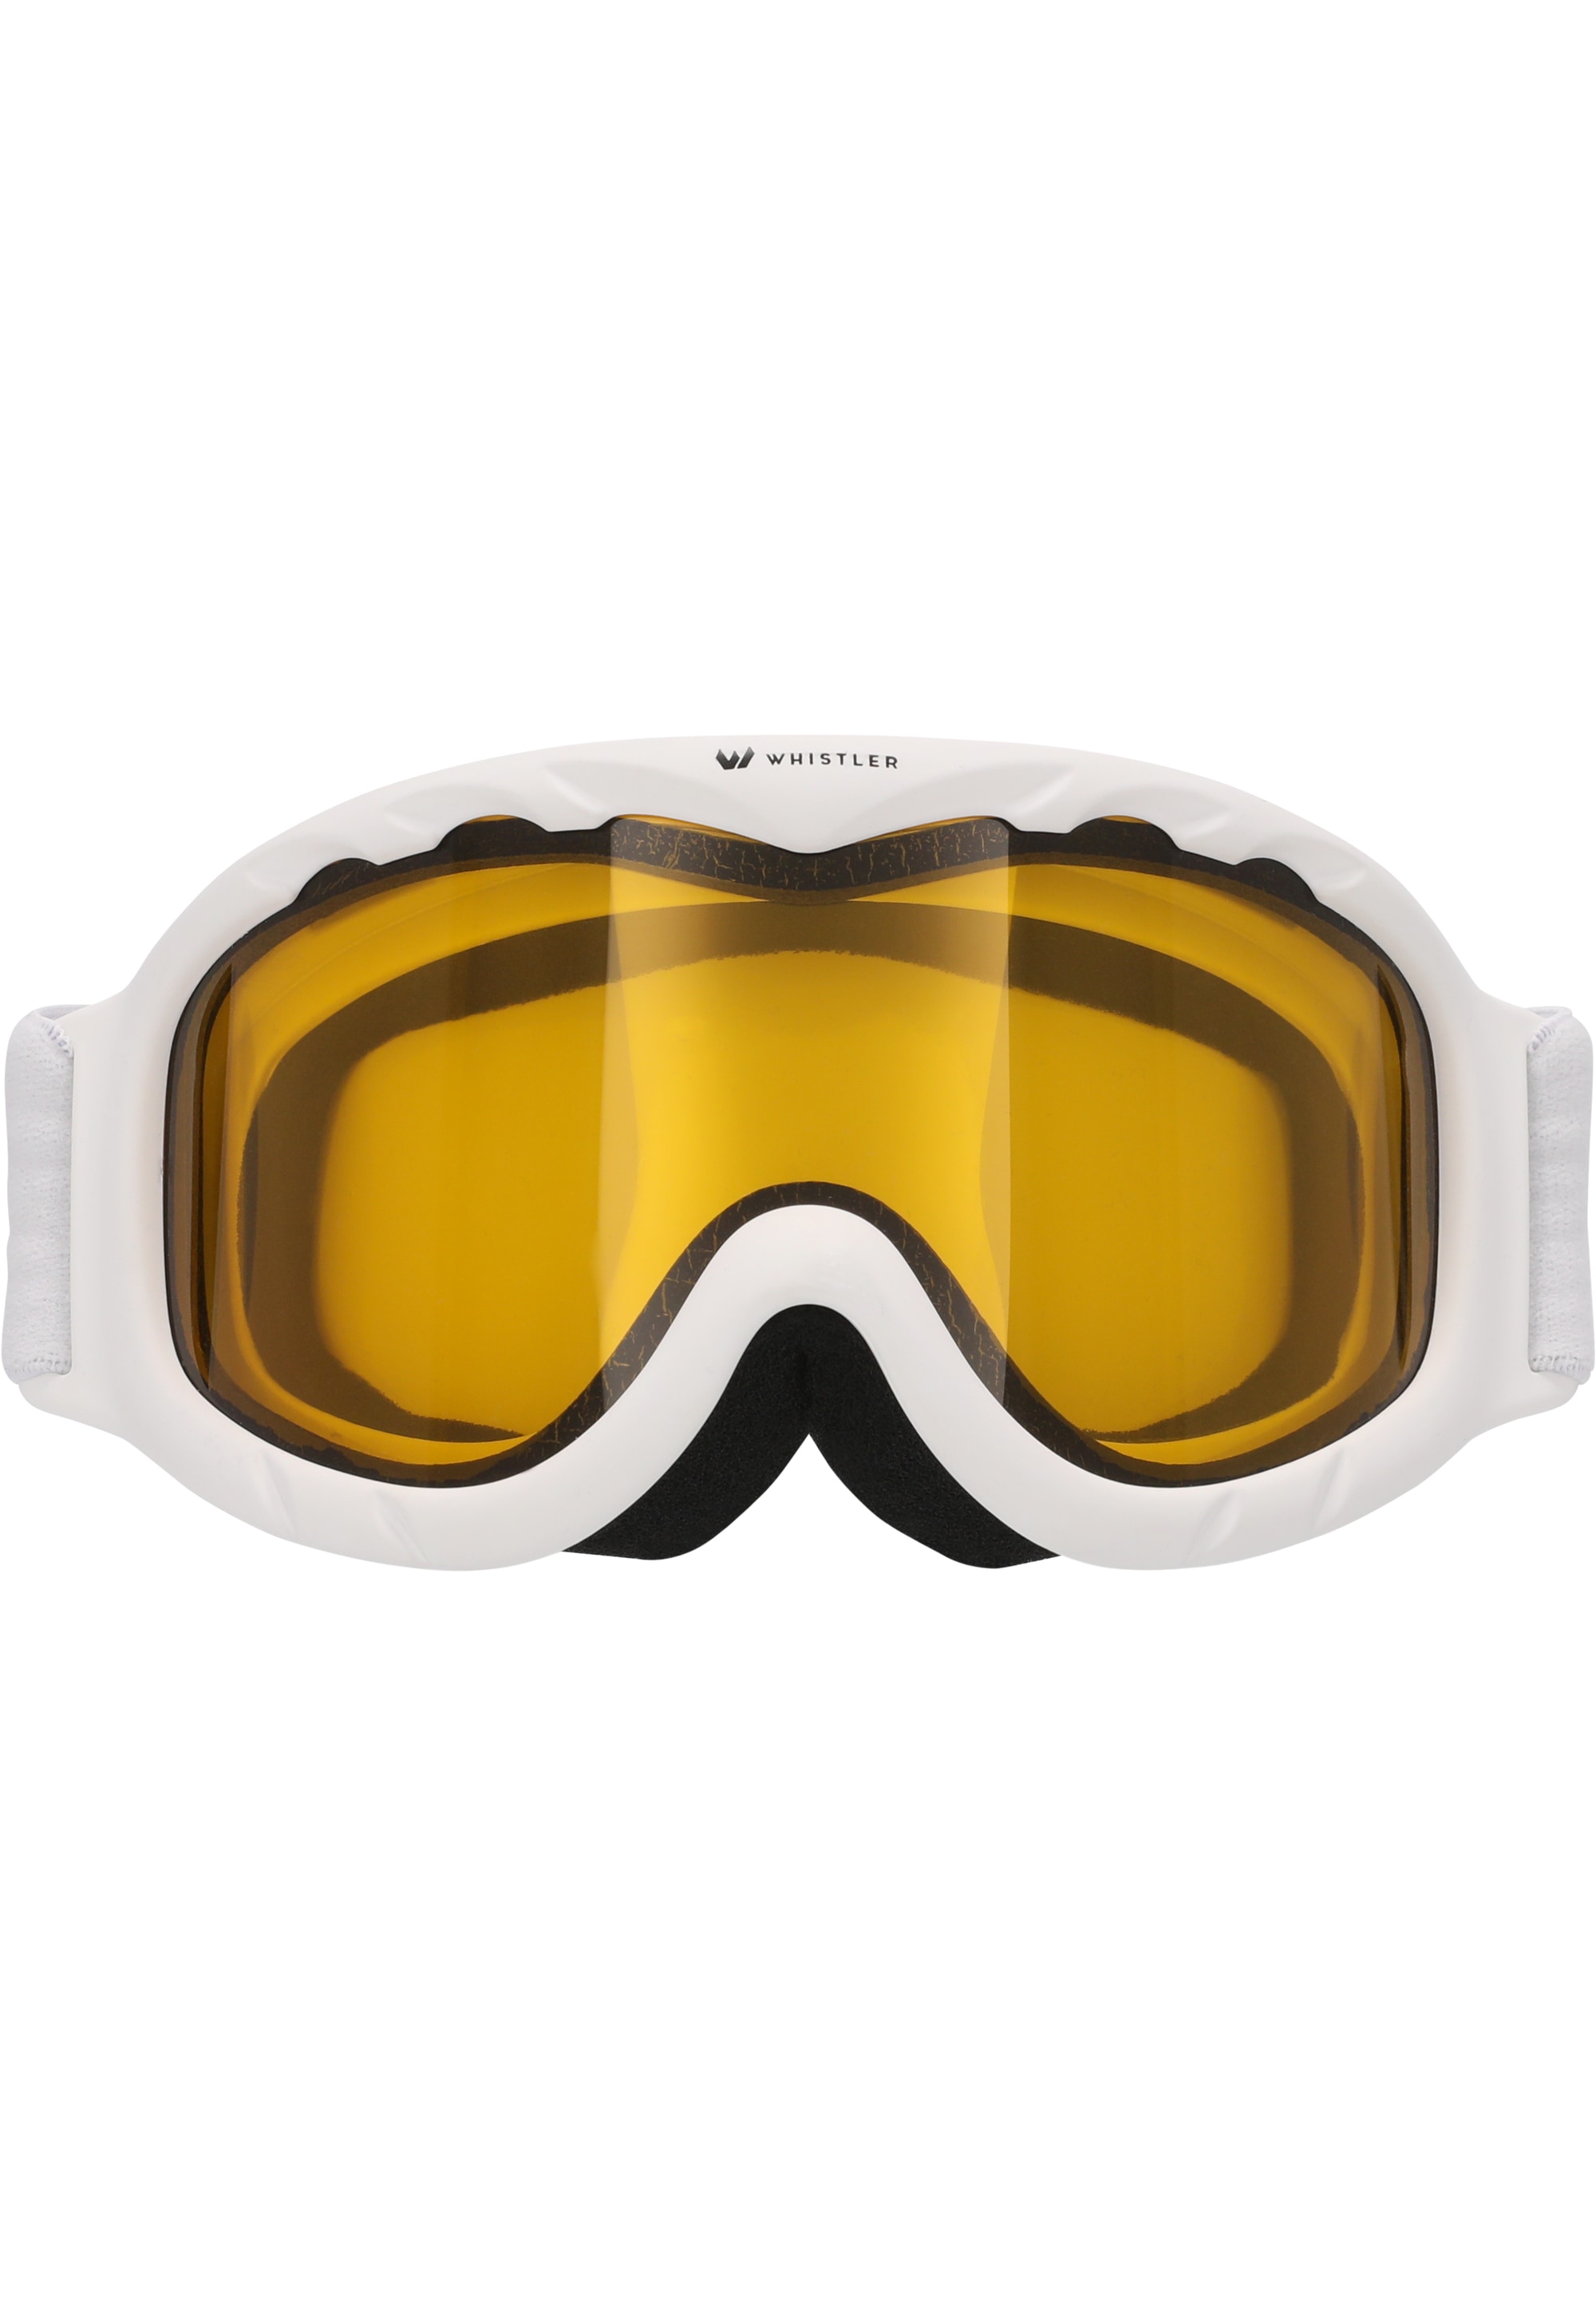 Skibrille »WS300 Jr. Ski Goggle«, mit Anti-Fog-Beschichtung